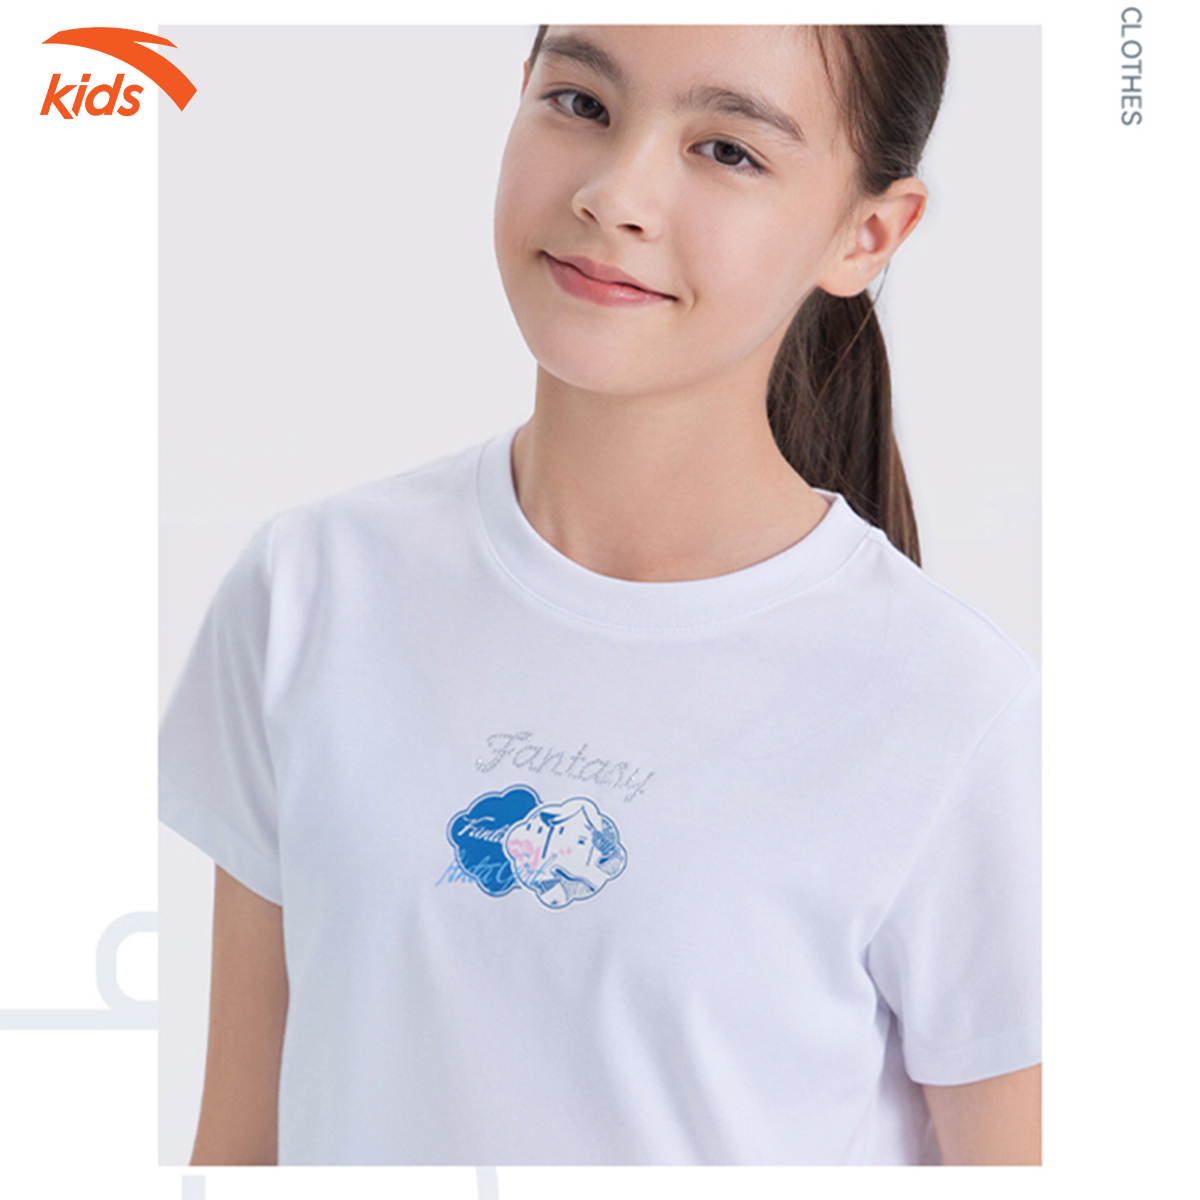 Áo phông thời trang bé gái Anta Kids phong cách thể thao năng động 362238143